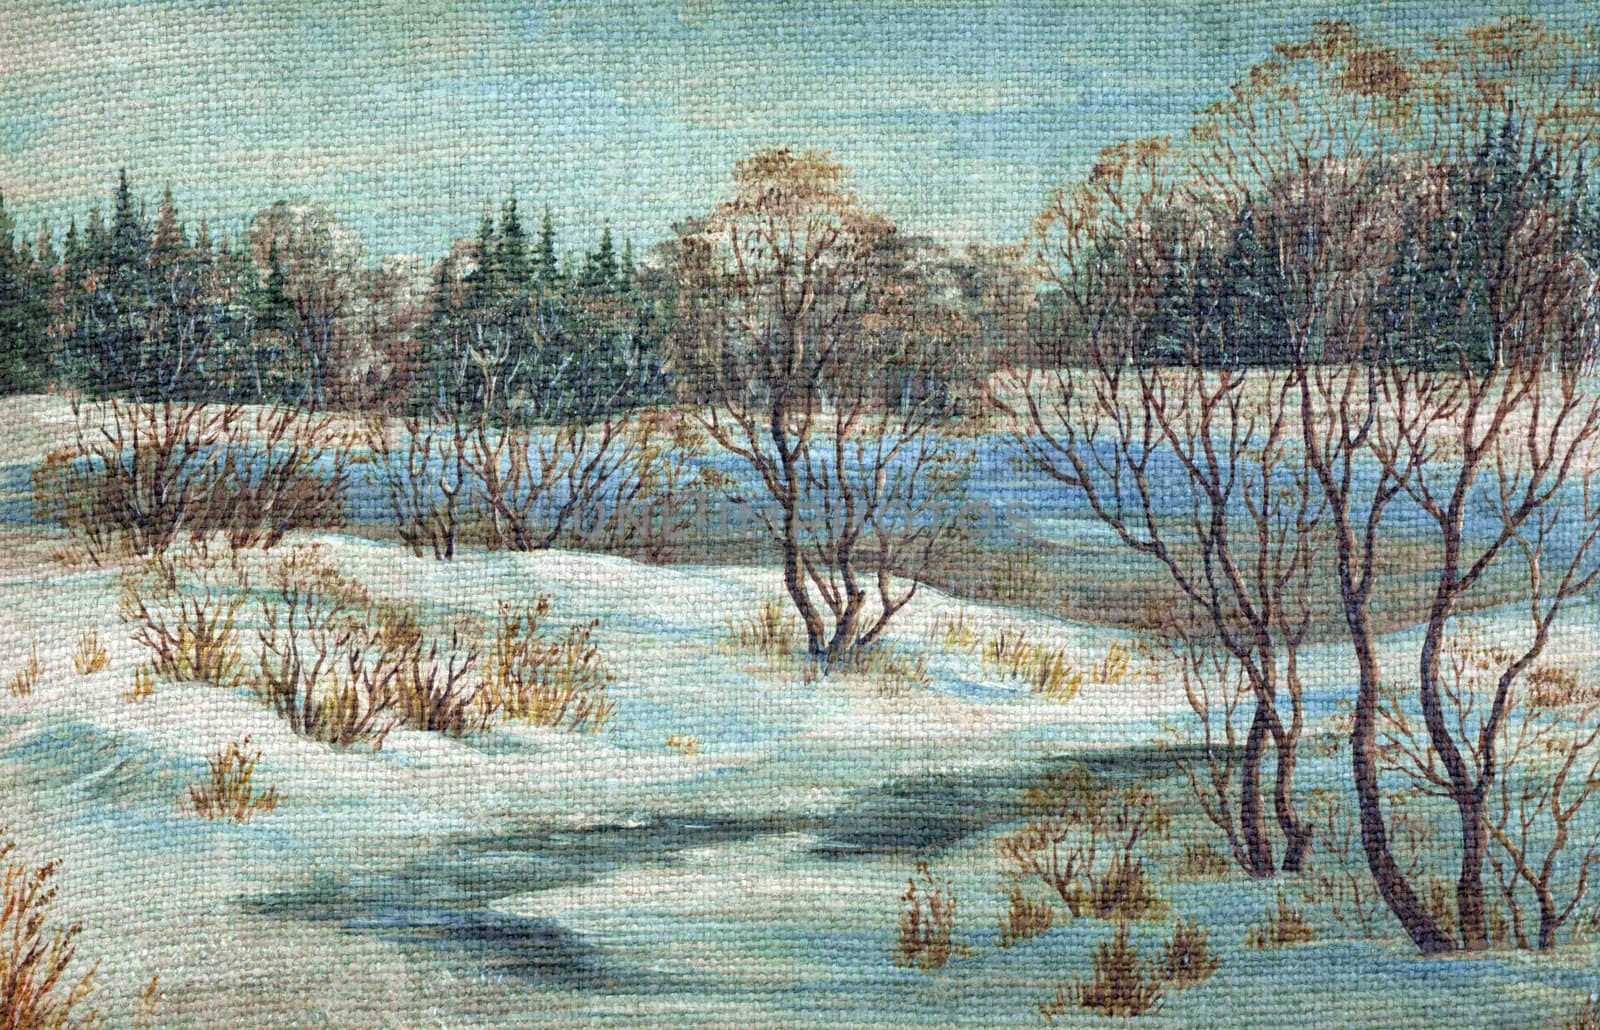 Landscape, winter river by alexcoolok